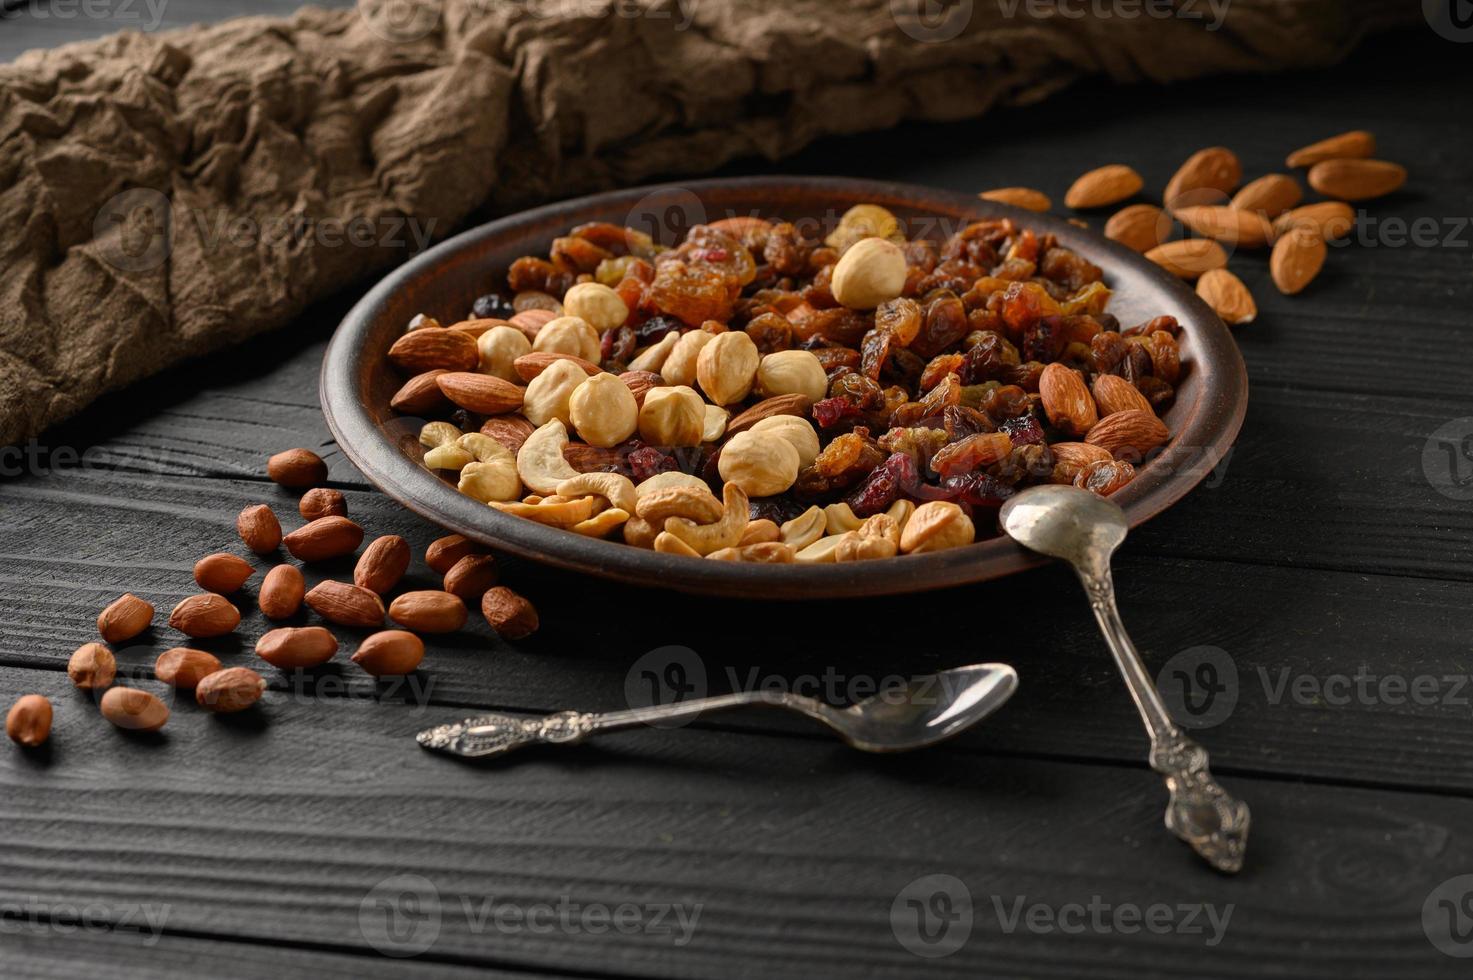 hasselnötter, cashewnötter, russin, mandlar, jordnötter, valnötter på en svart träbakgrund foto